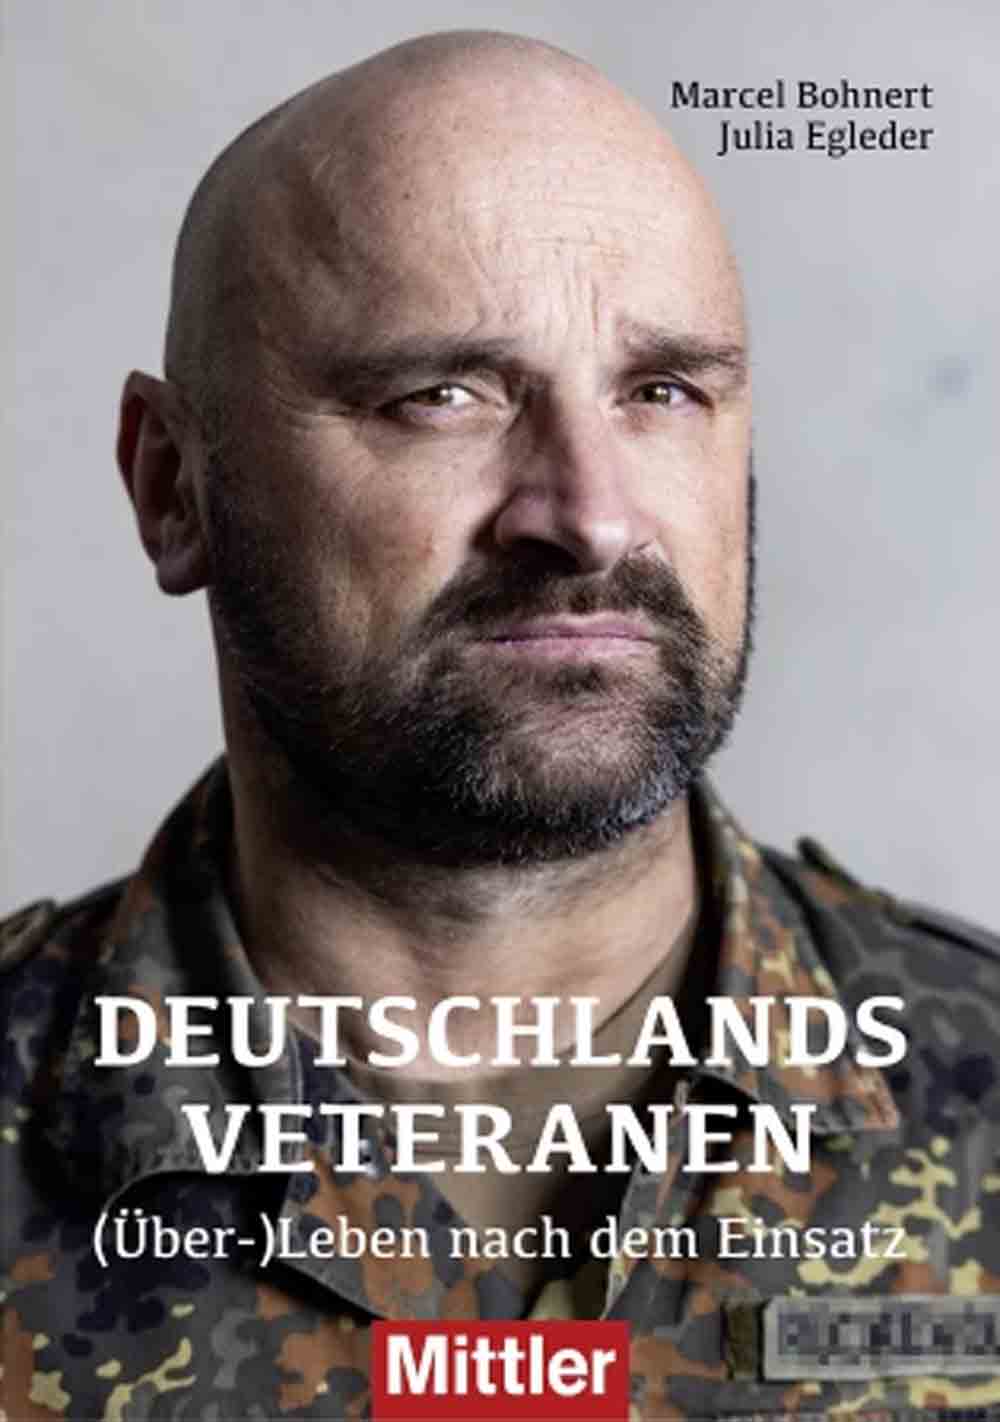 Lesetipps für Gütersloh: »Veteranen in Deutschland«, ungefilterte Erfahrungsberichte als Plädoyer für mehr Anerkennung